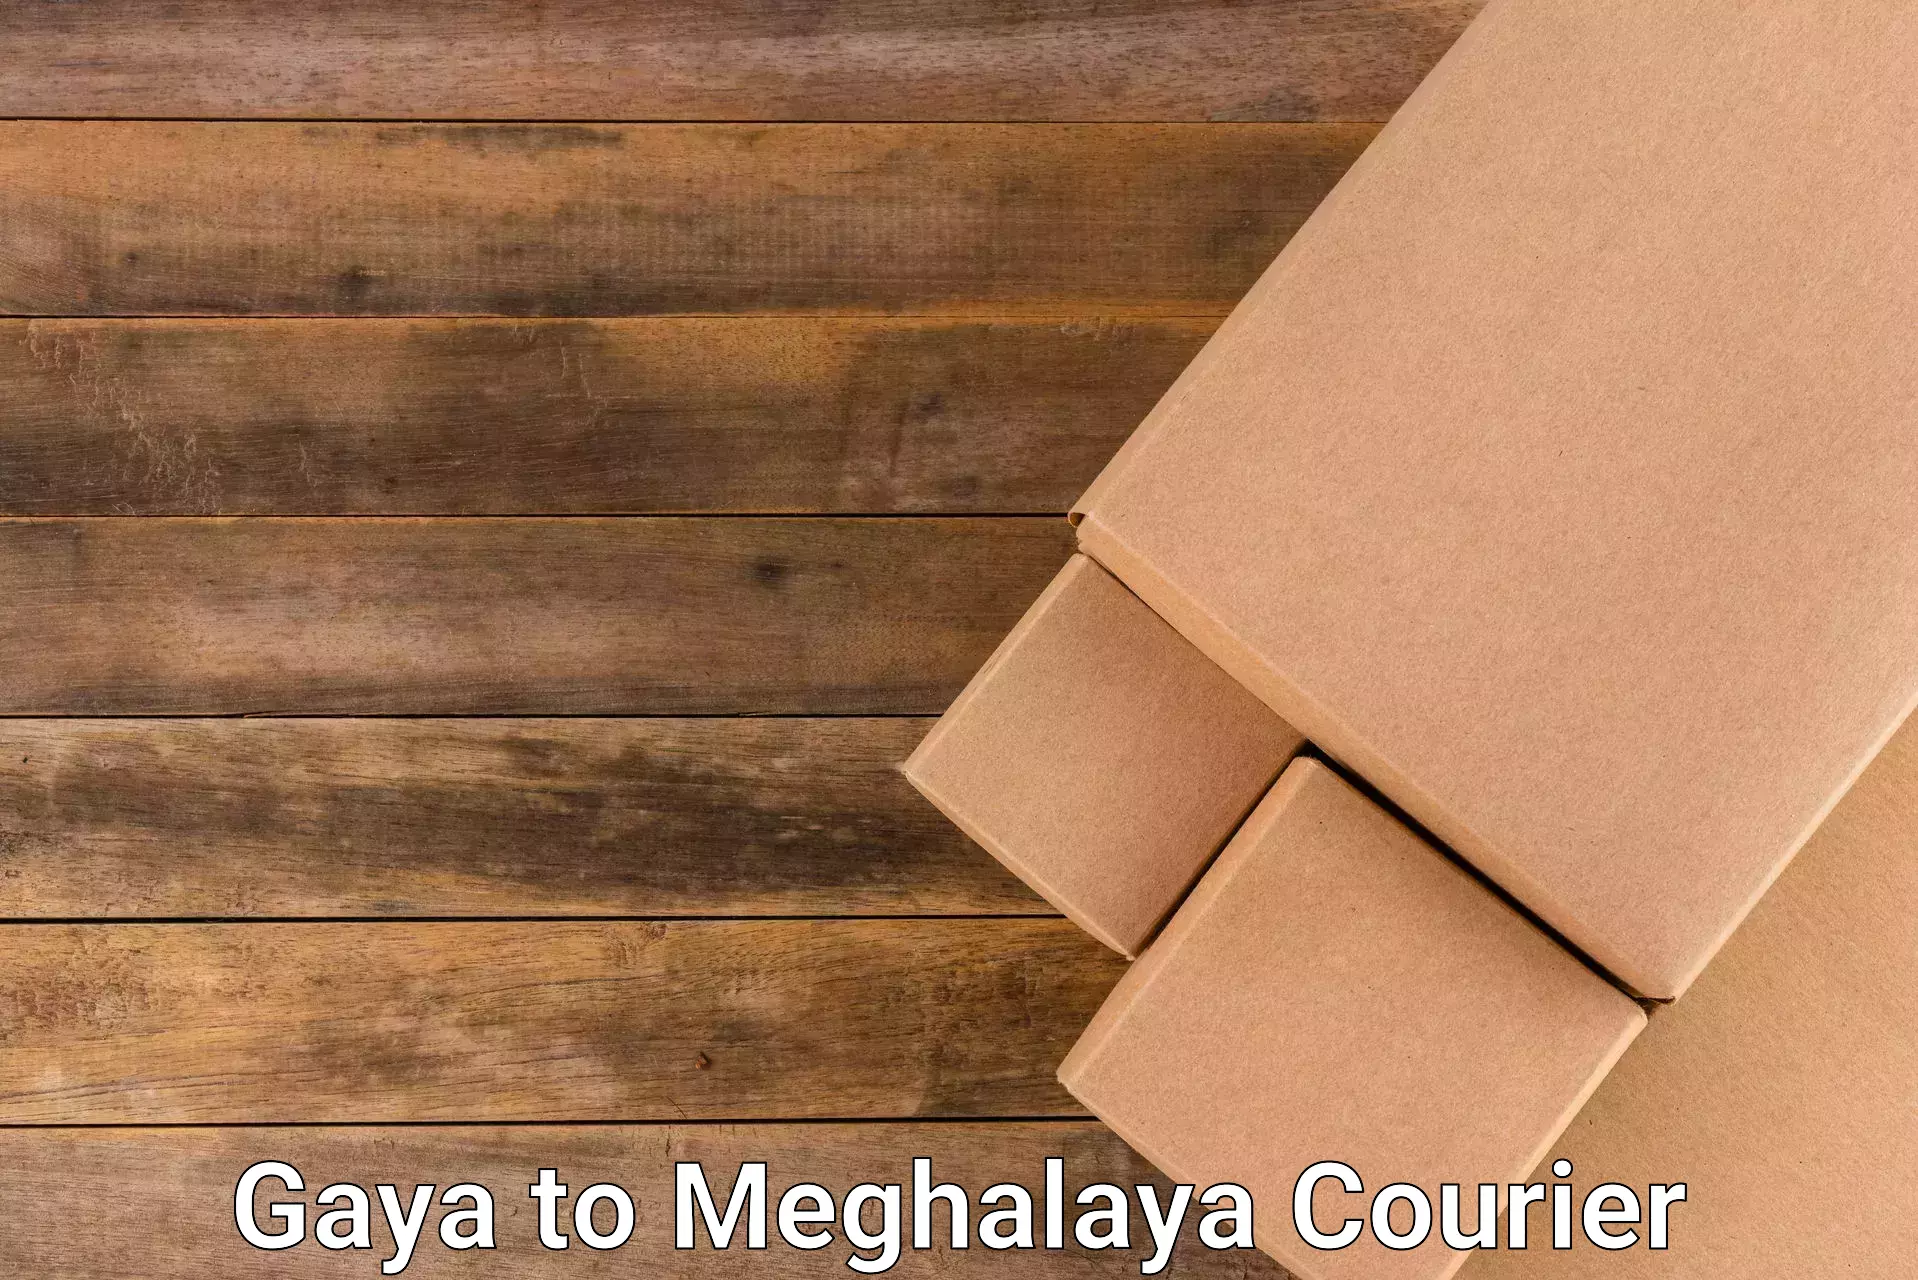 Fast shipping solutions Gaya to Meghalaya